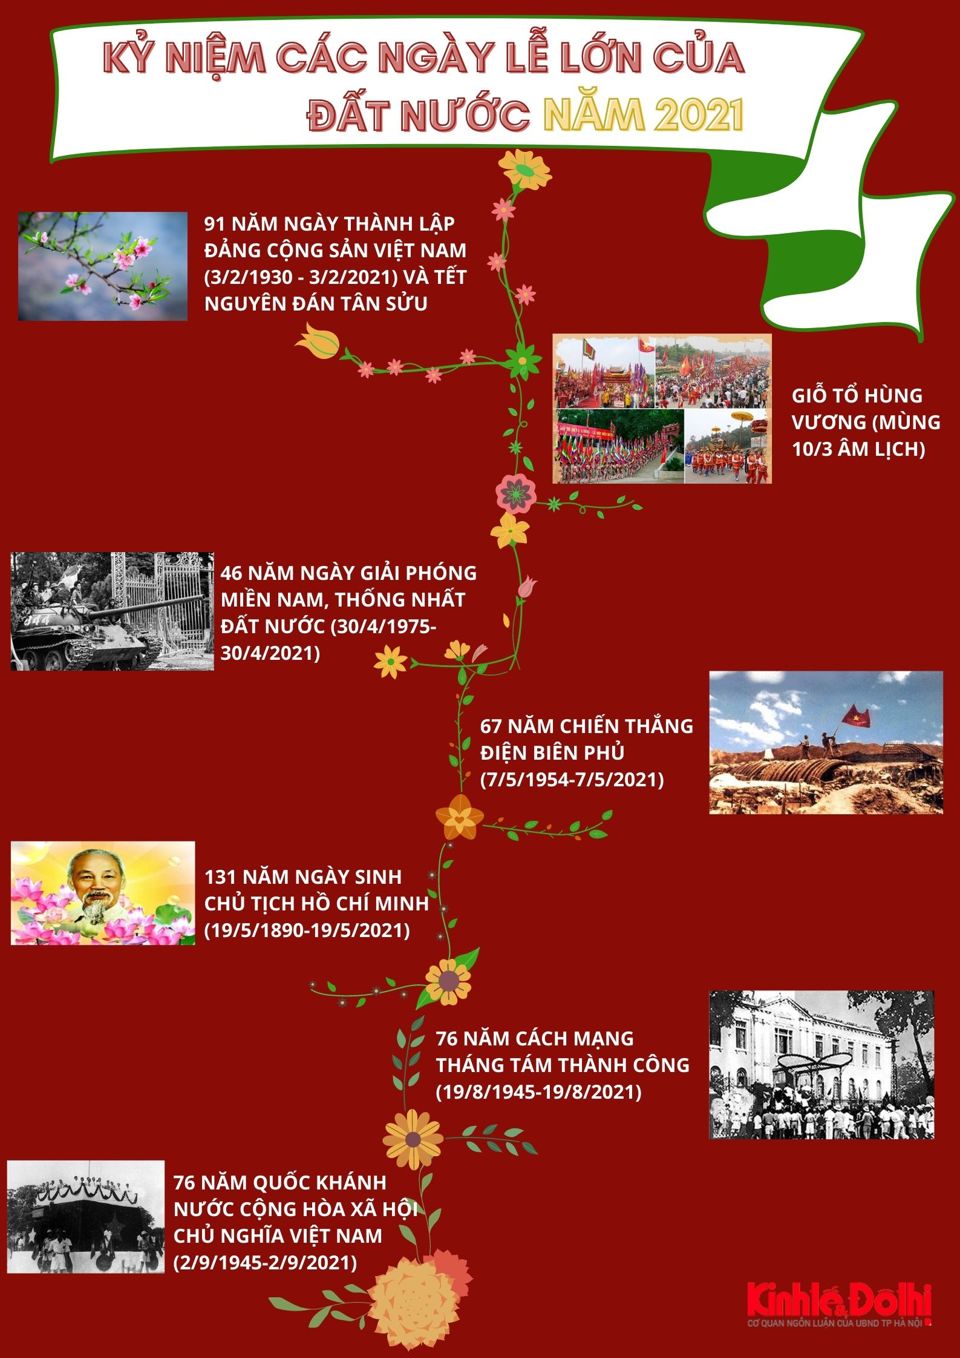 [Infographic] Kỷ niệm các sự kiện quan trọng, ngày lễ lớn của Việt Nam trong năm 2021 - Ảnh 2